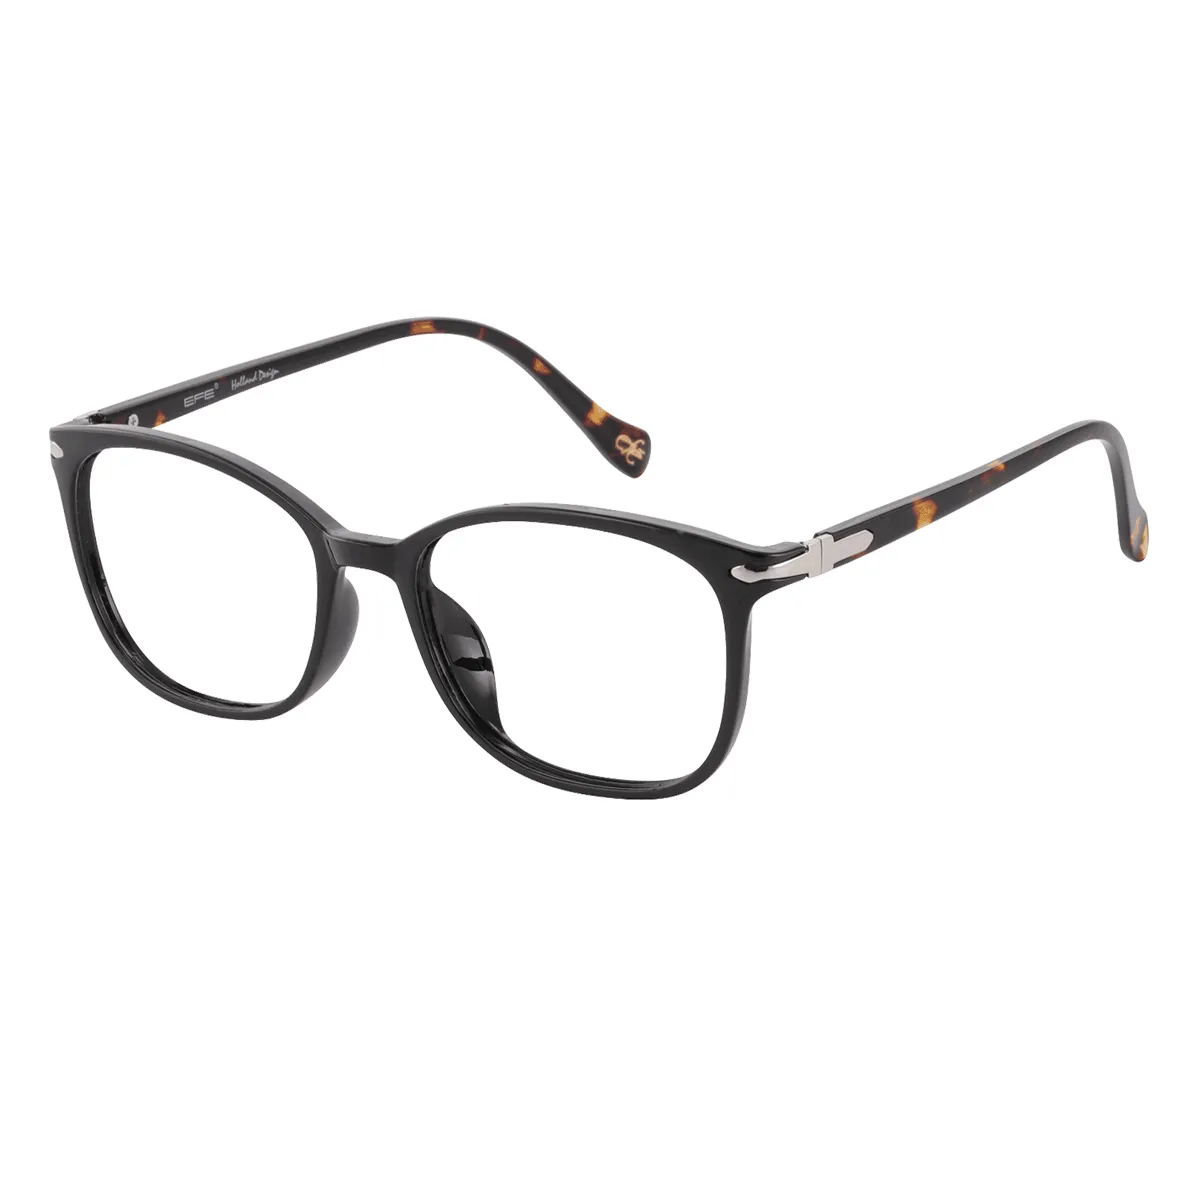 Hearn - Oval Black Glasses for Men & Women